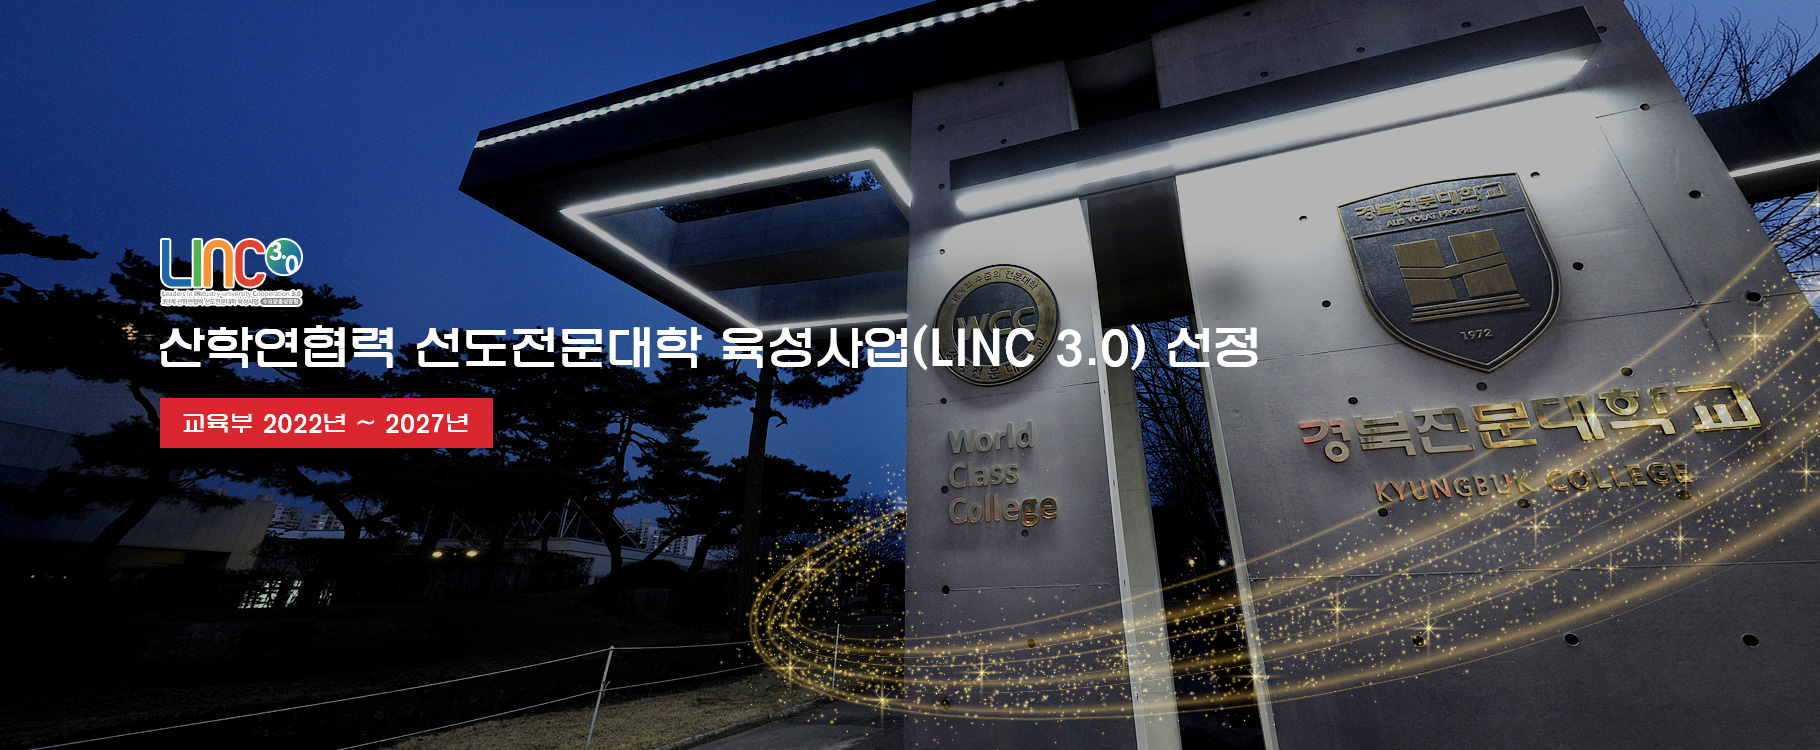 LINC 3.0 로고
산학연협력 선도전문대학 육성사업(LINC 3.0) 선정
교육부 2022년 ~ 2027년